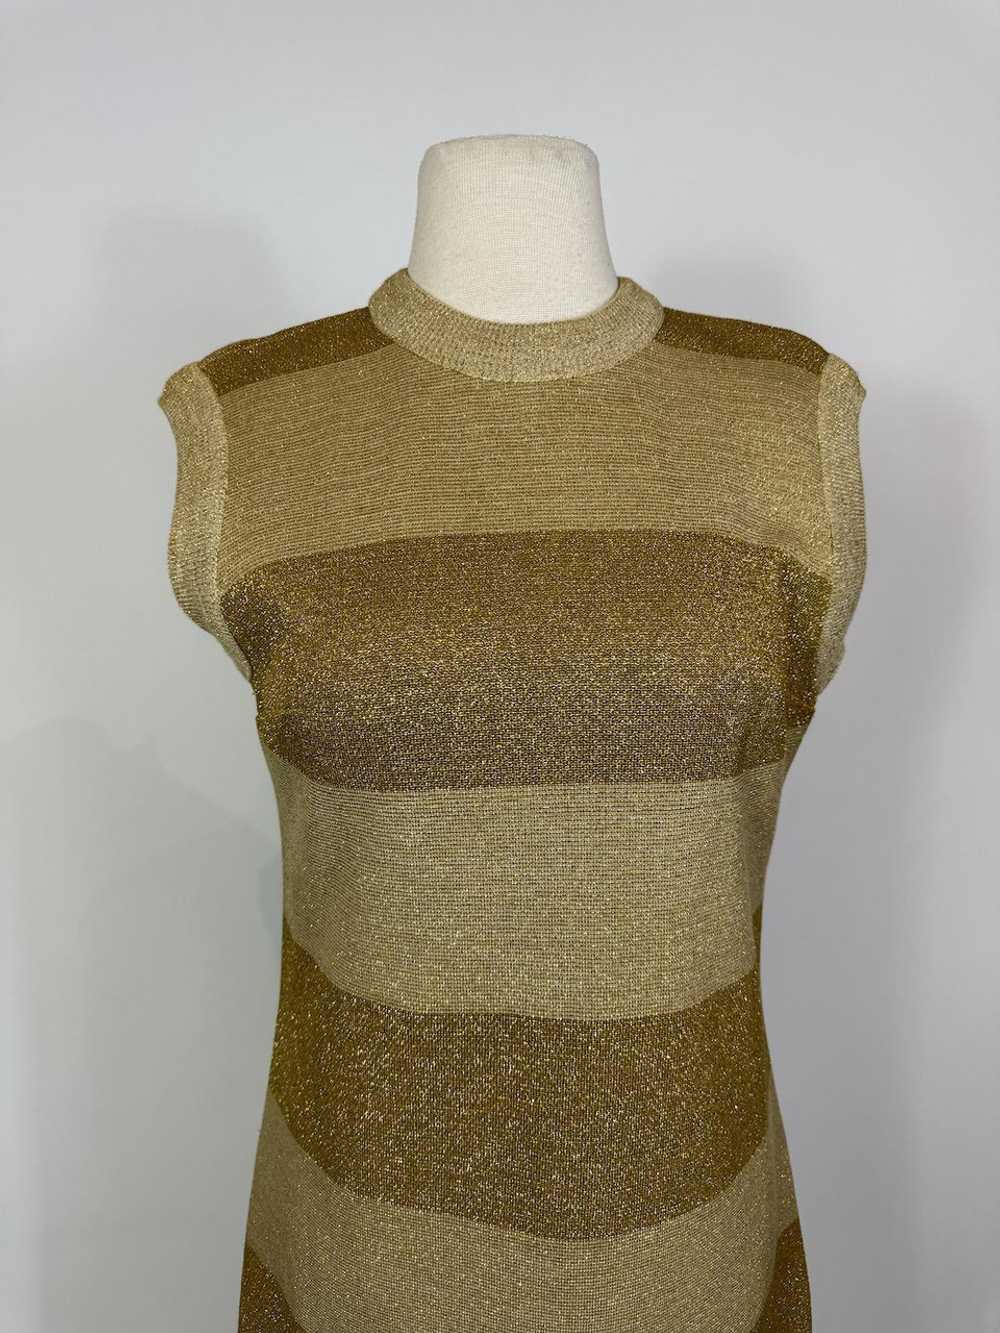 1960s Mod Gold Wool Metallic Knit Shift Dress - image 2